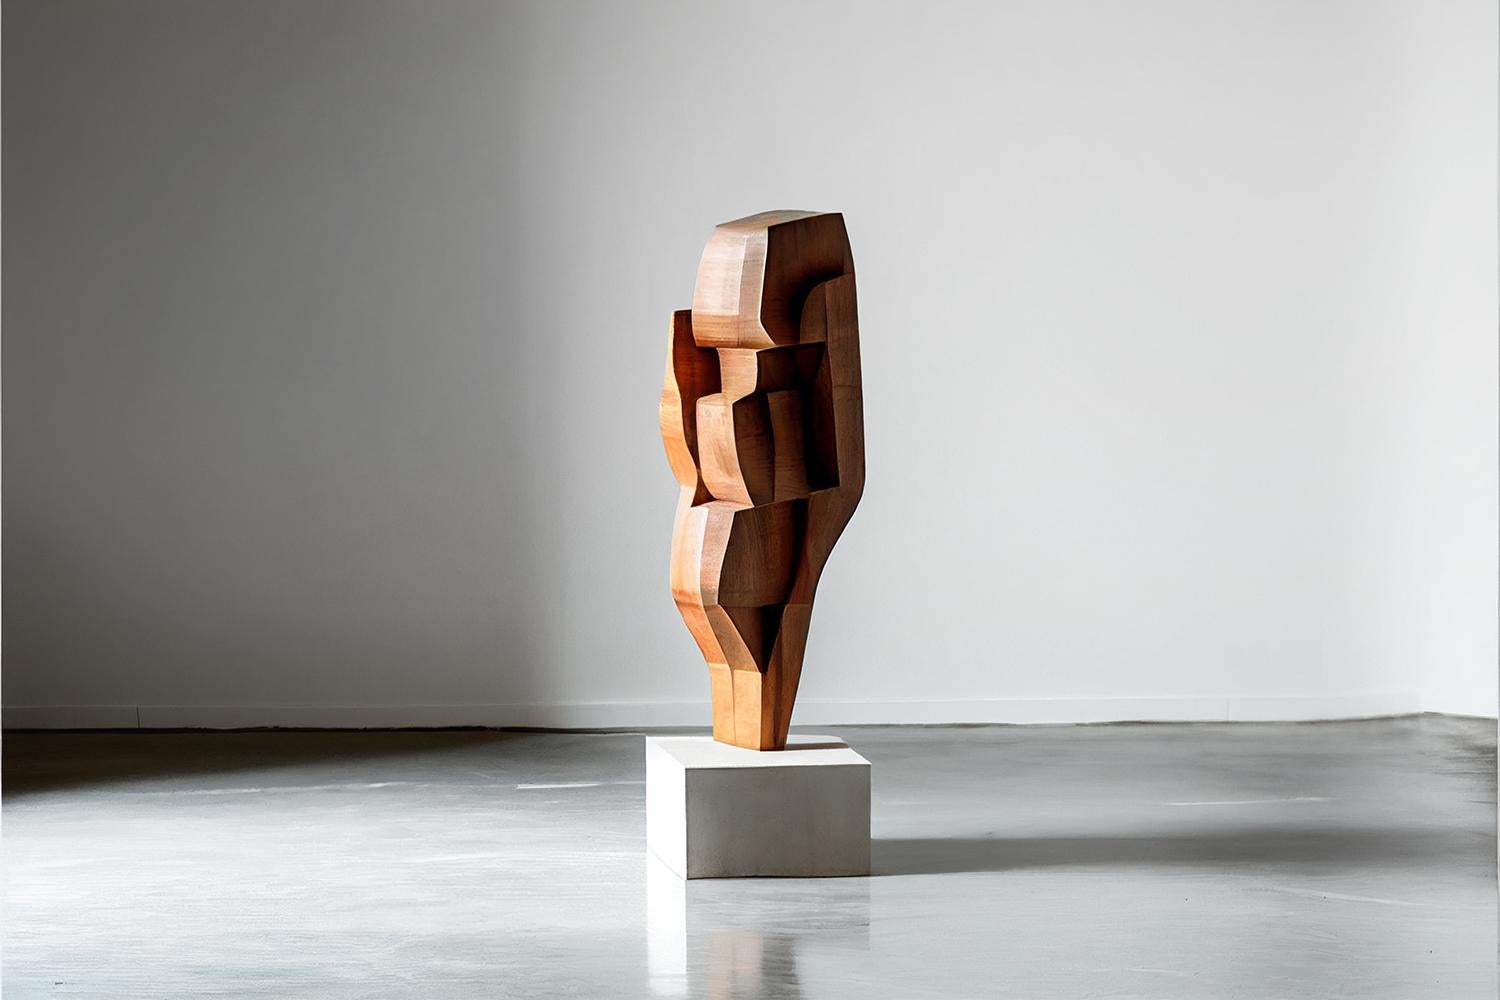 Sculpture abstraite en bois dans le style de l'art scandinave, Unseen Force de Joel Escalona.

Cette sculpture monolithique, conçue par l'artiste talentueux Joel Escalona, est un exemple impressionnant de la beauté de l'artisanat. Réalisée à la main